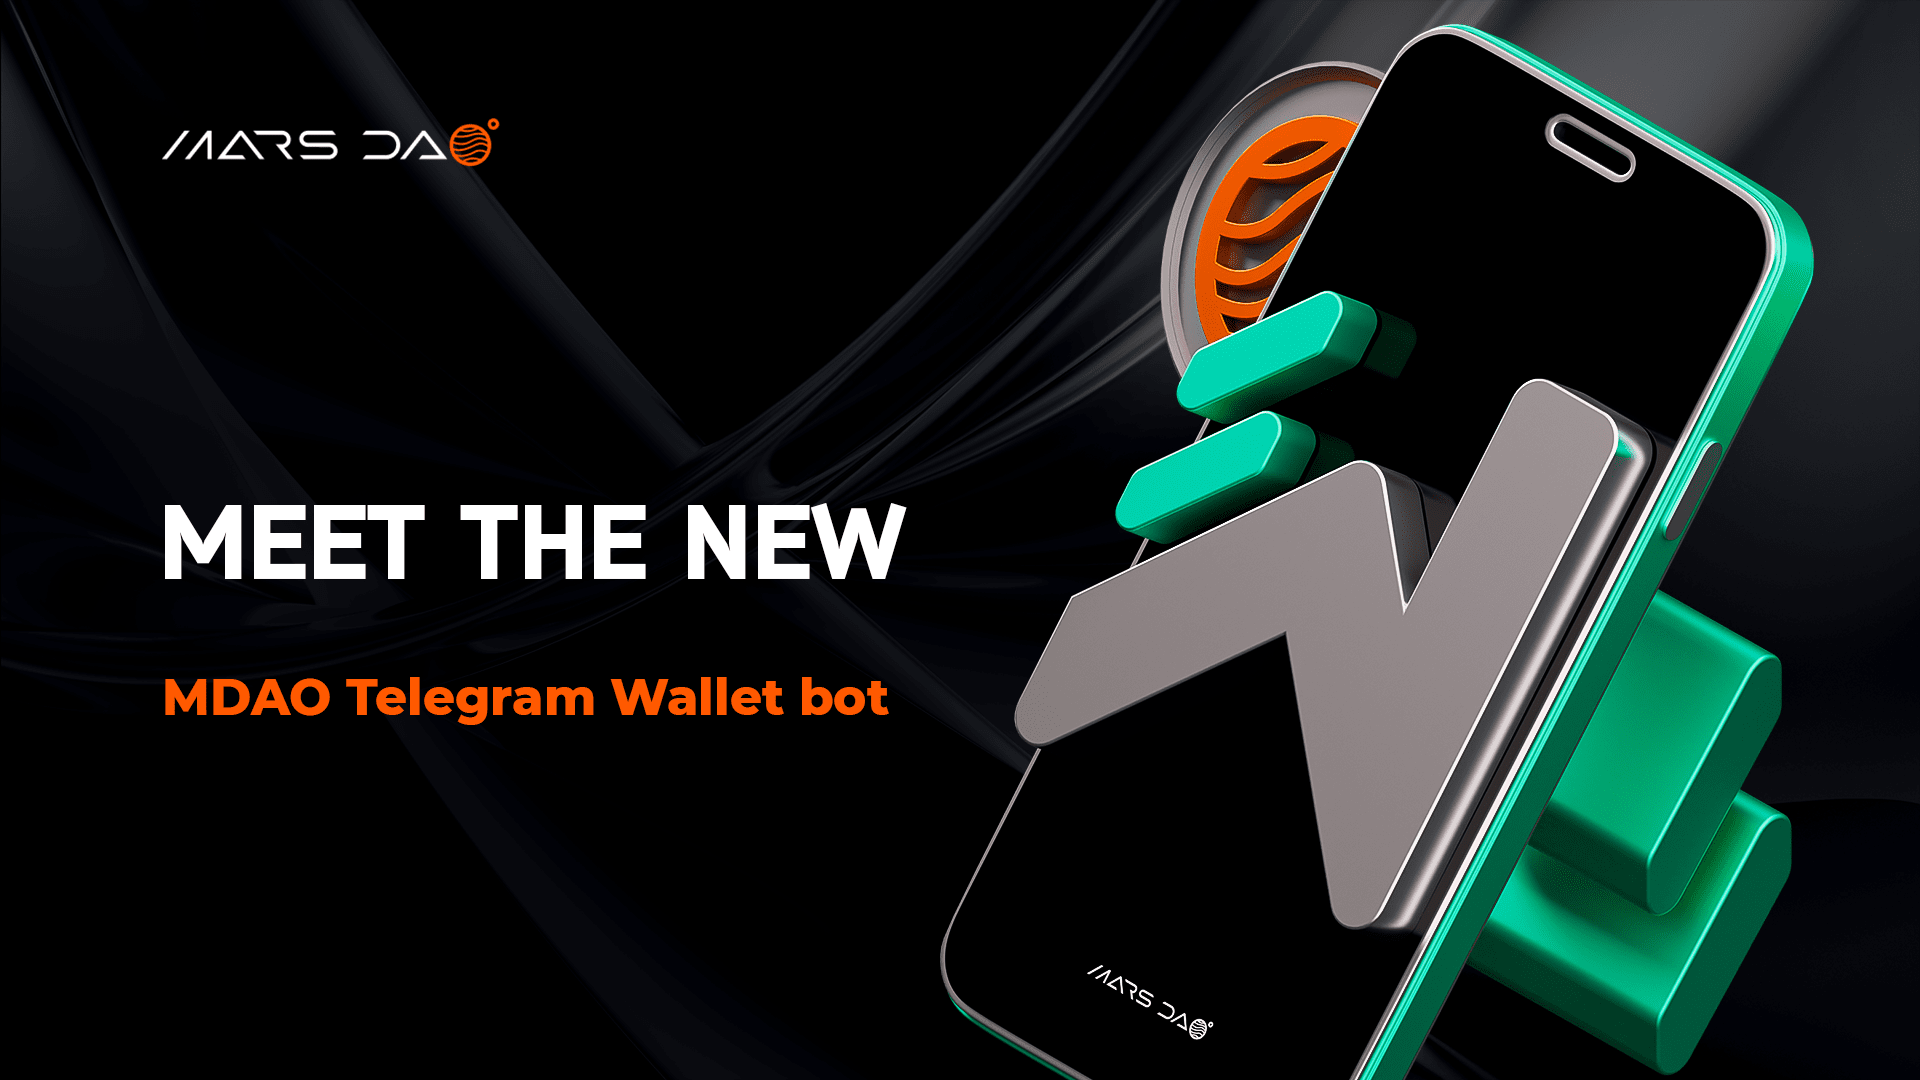 Meet the new MDAO Telegram Wallet bot